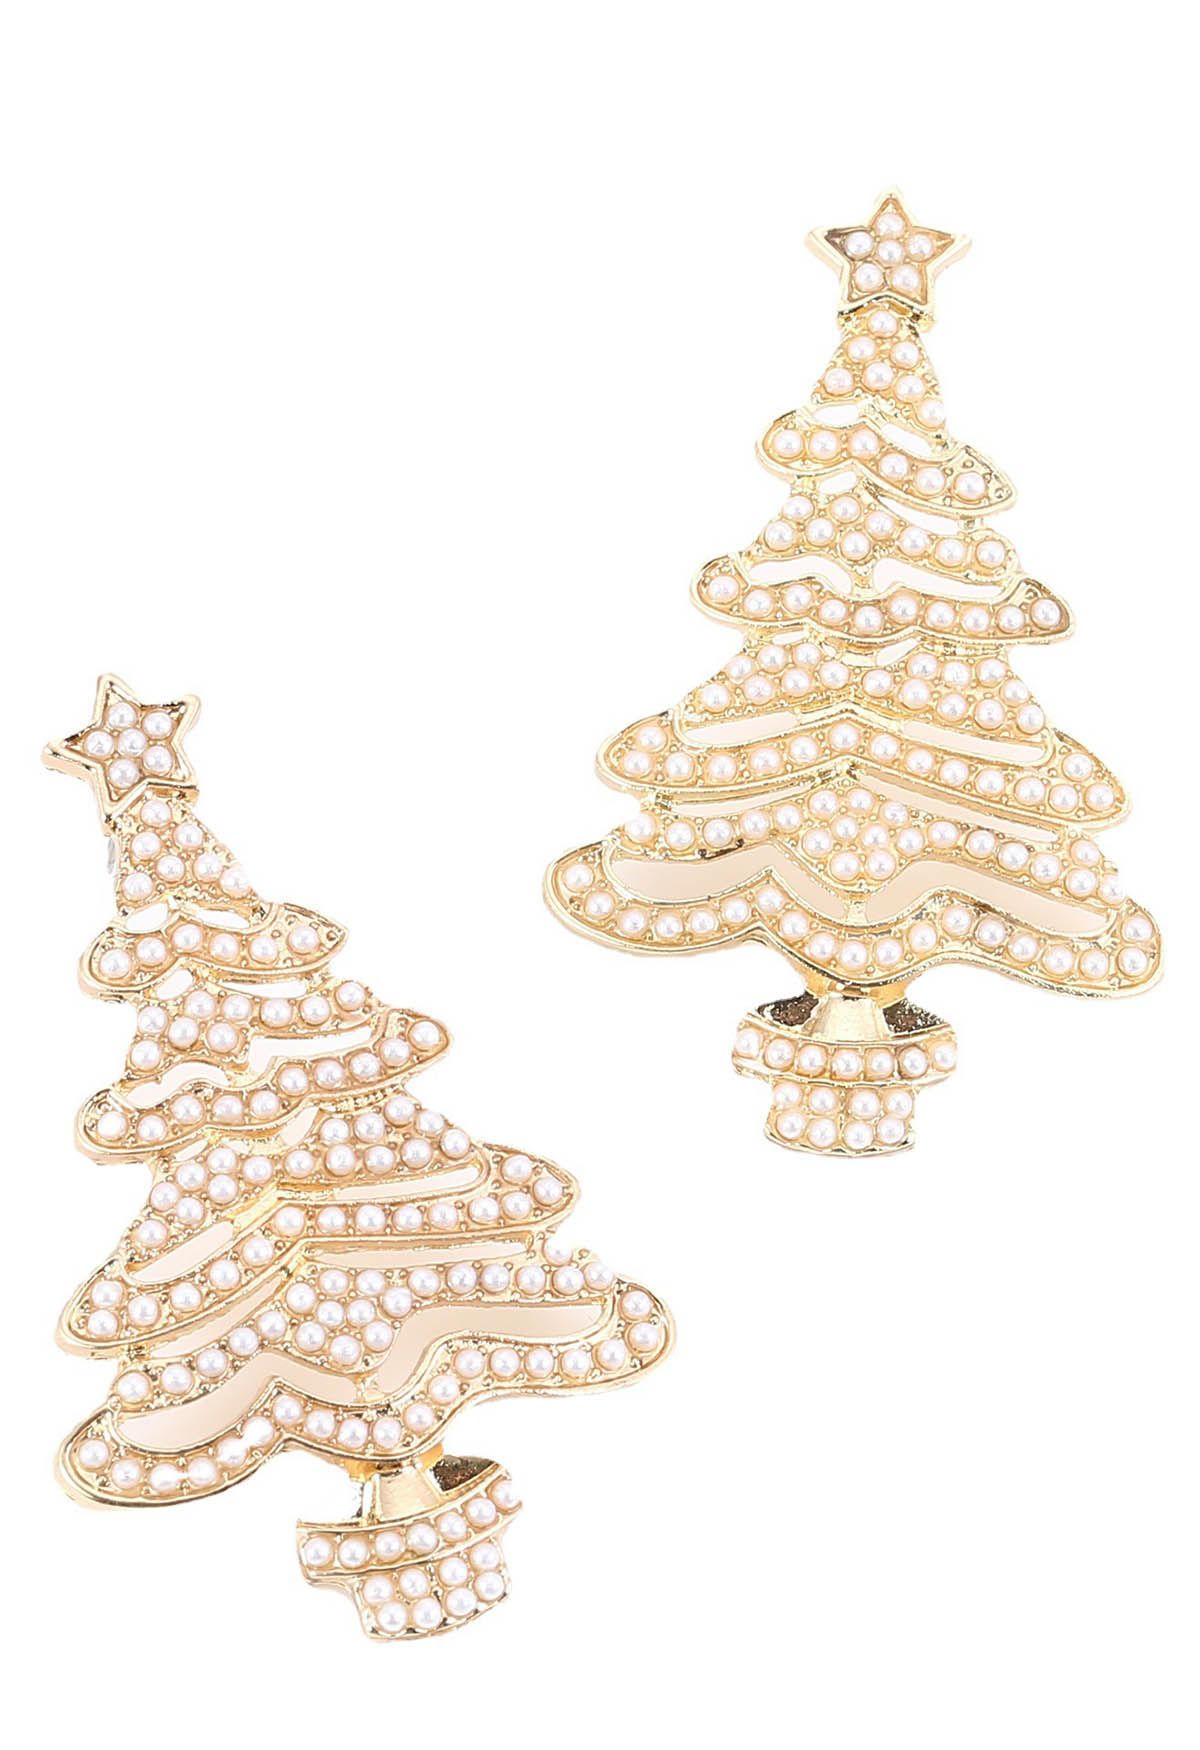 Boucles d'oreilles éblouissantes en forme d'arbre de Noël avec perles